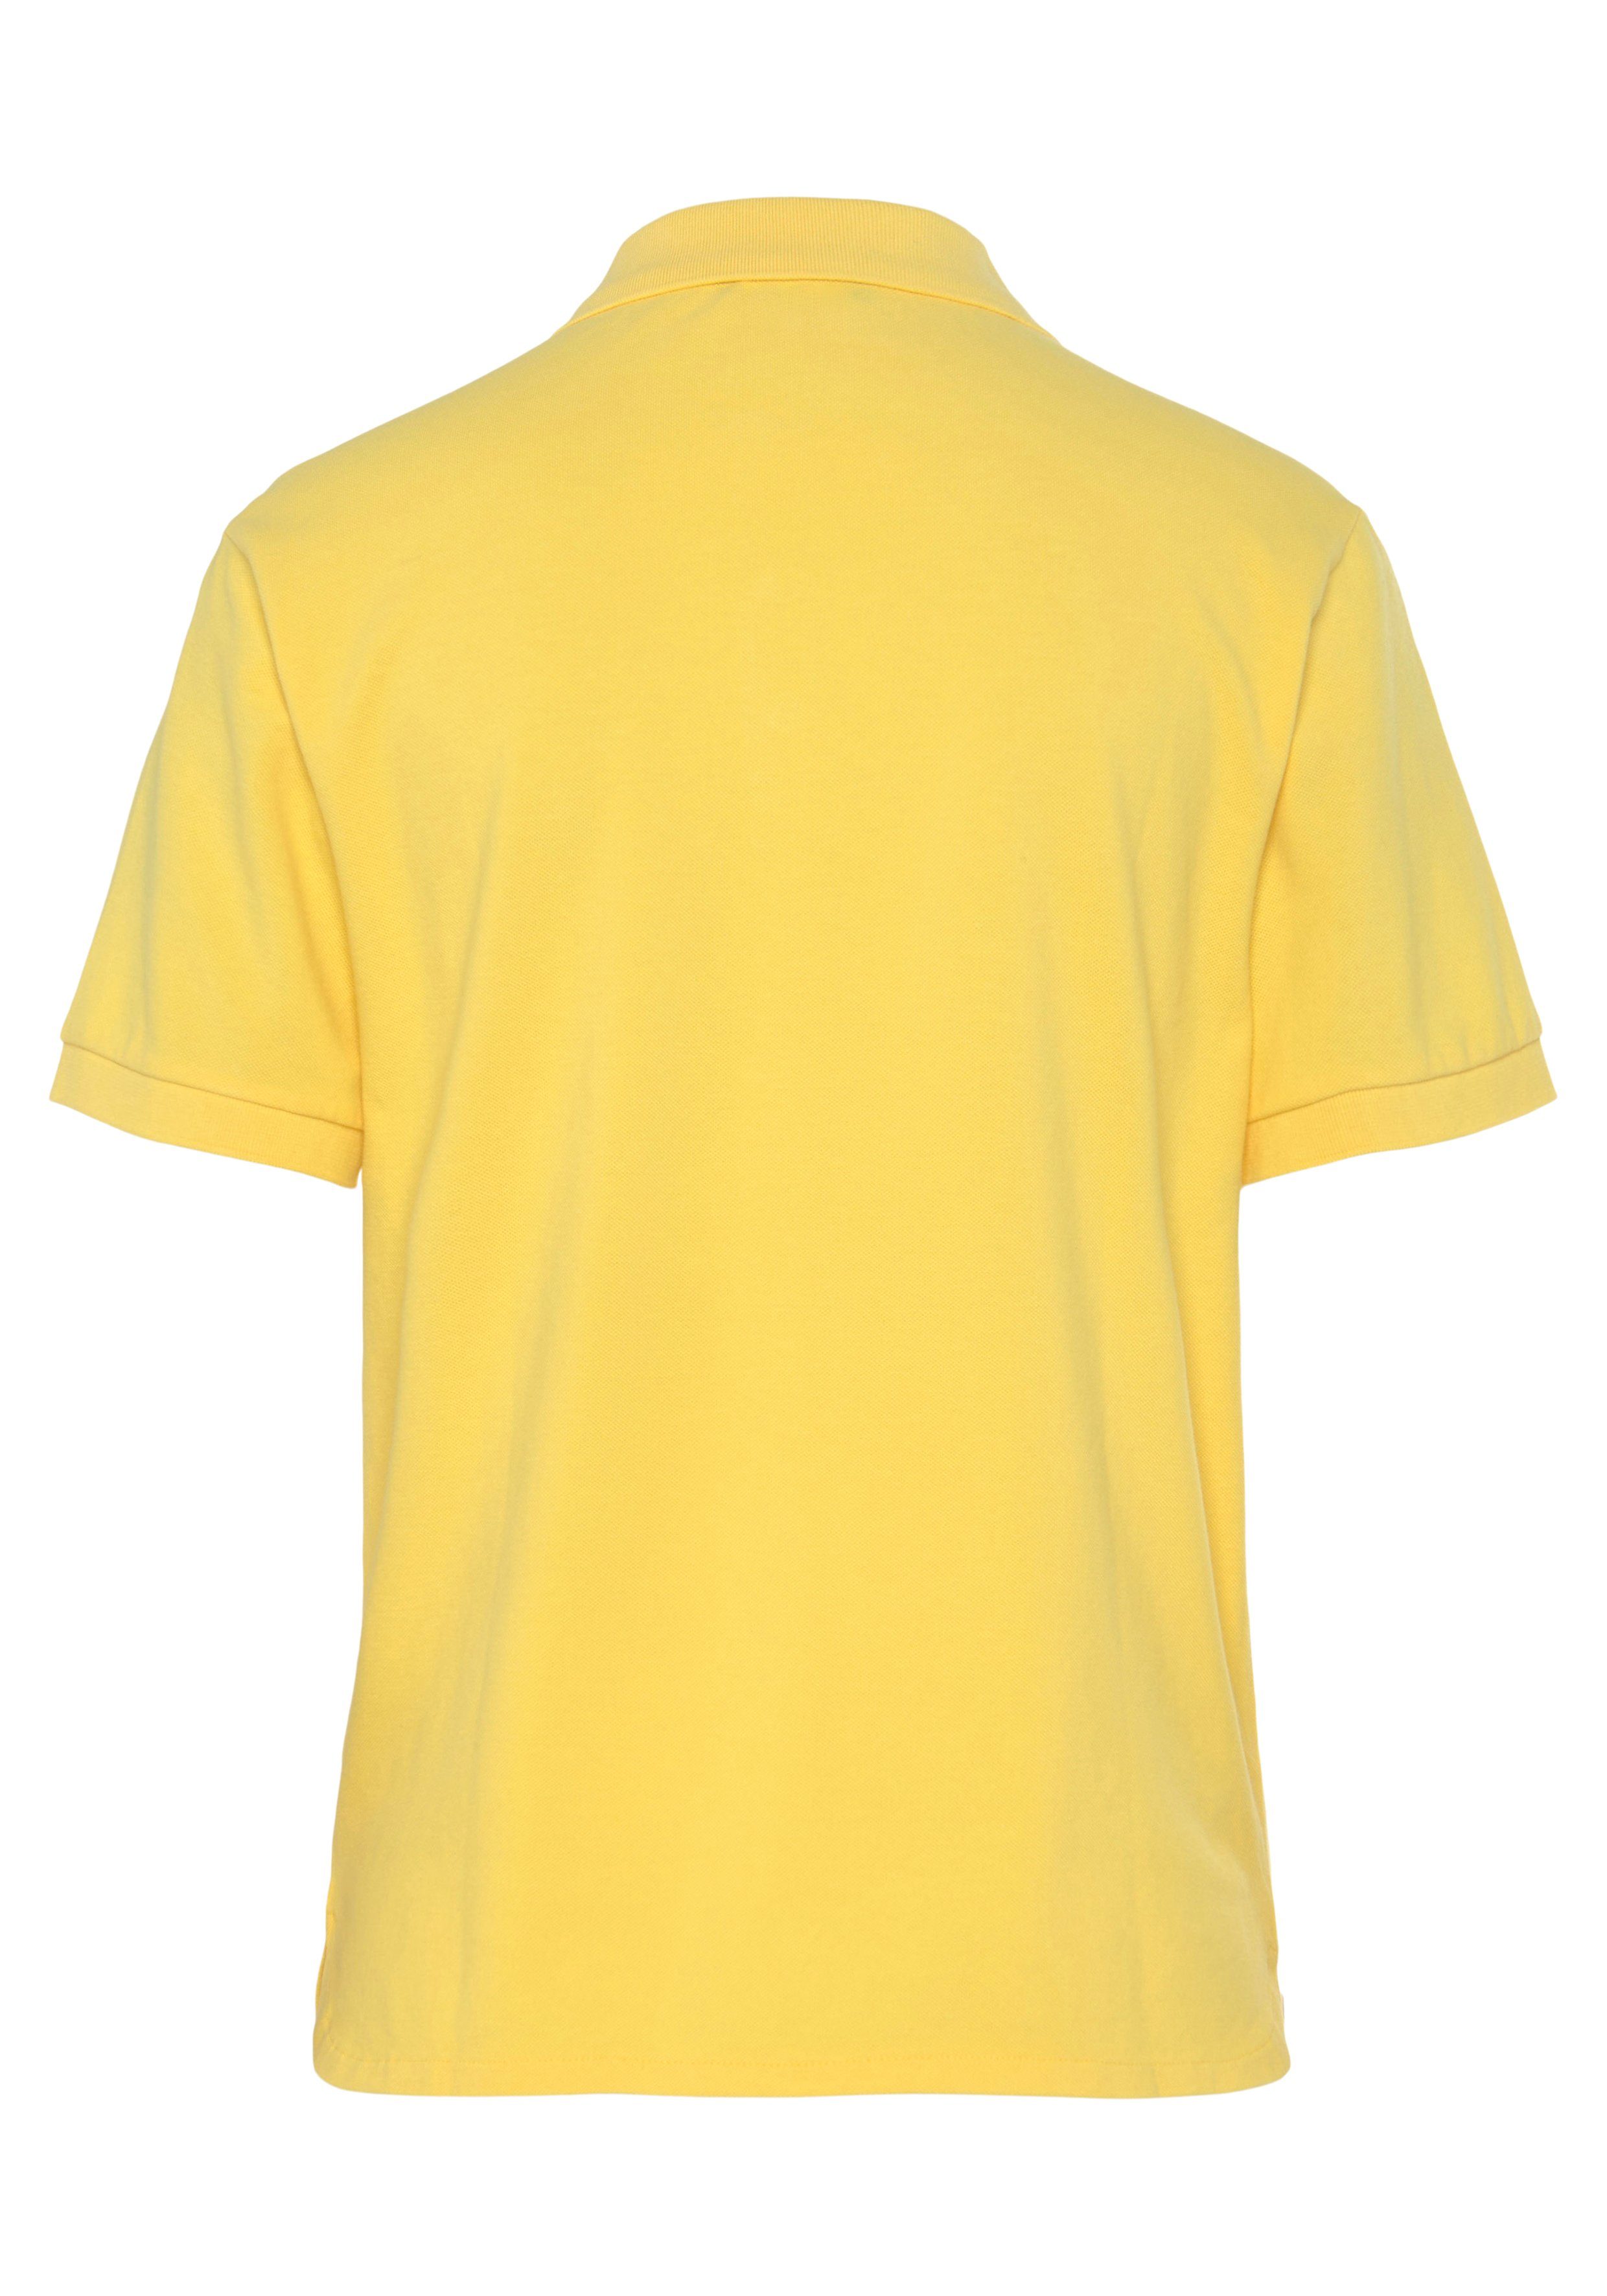 United Colors of Benetton Knöpfen gelb Poloshirt perlmuttfarbenen mit